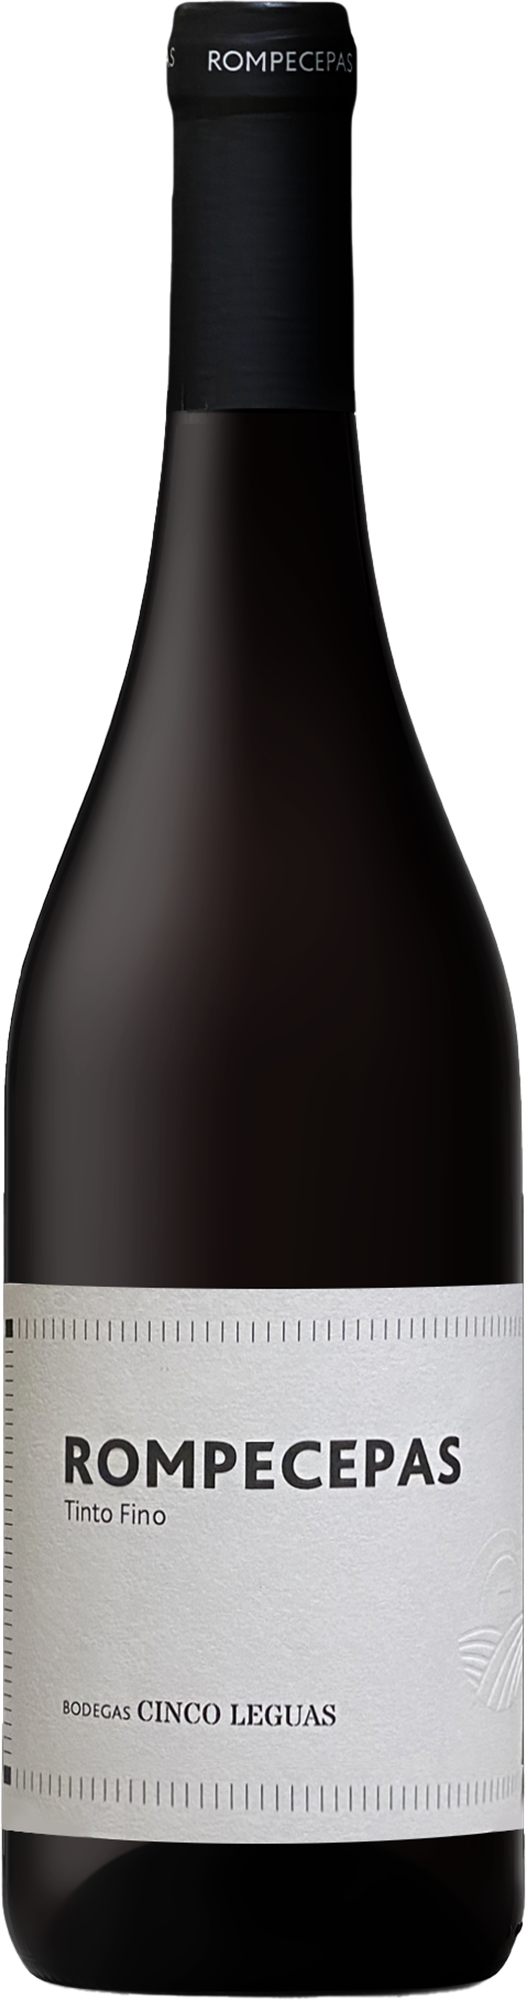 Bodegas Cinco Léguas Vinos de Madrid Rompecepas Tinto Fino 2019